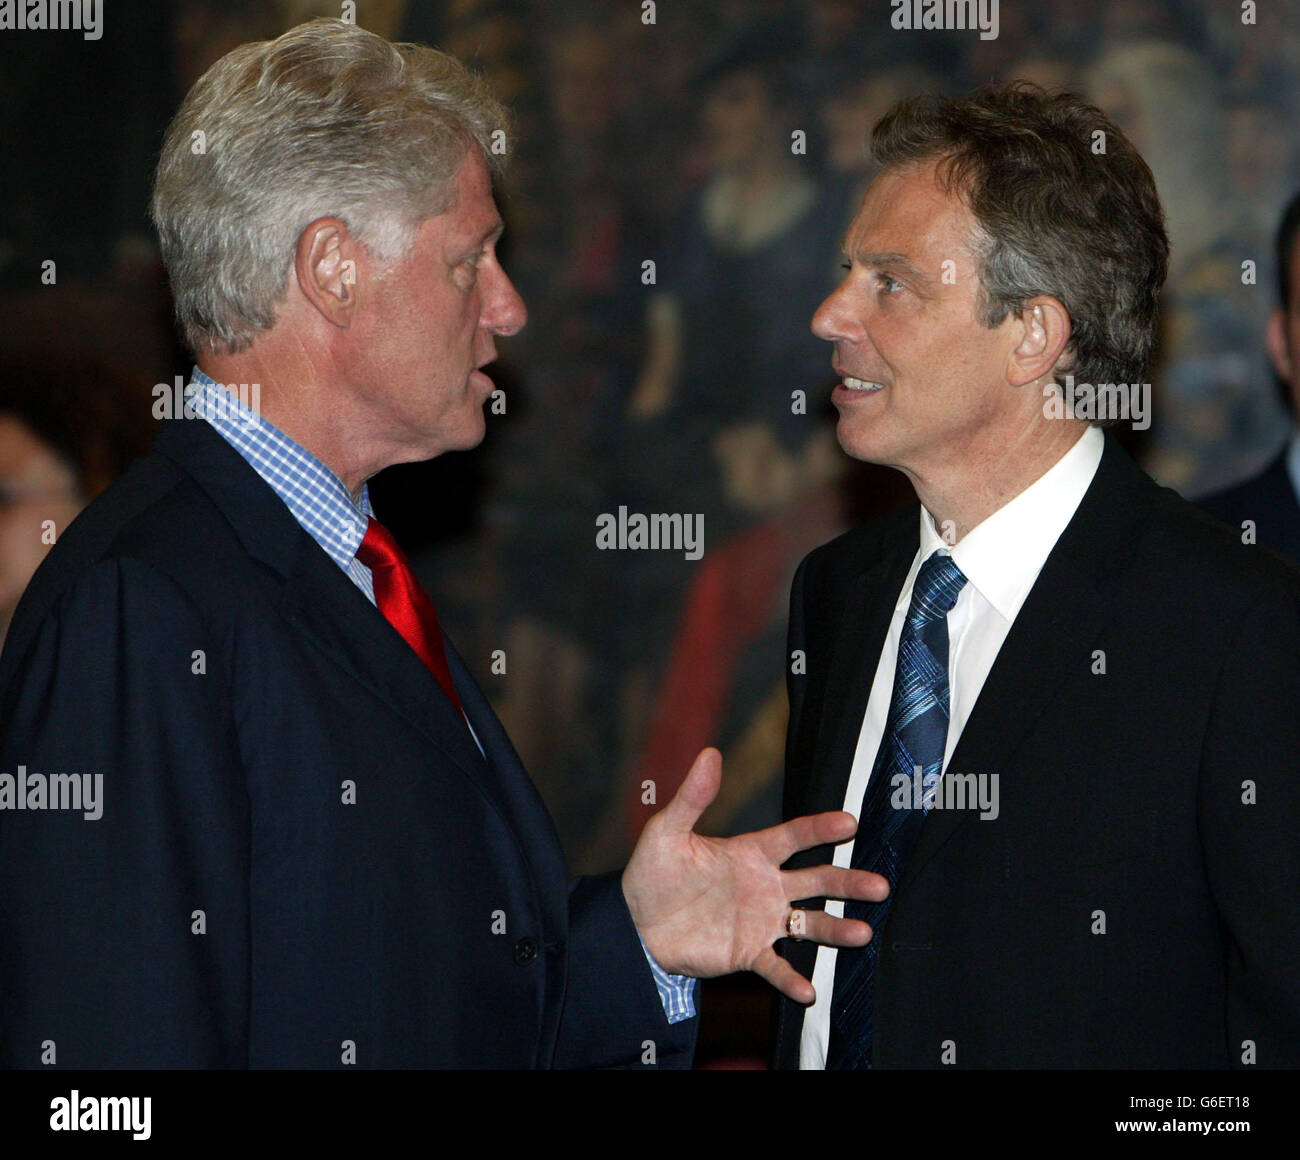 El ex Presidente de los Estados Unidos, Bill Clinton, habla con el Primer Ministro Tony Blair en el Guildhall de la ciudad de Londres, lugar de celebración de la cena progresiva de Gobernanza. Foto de stock